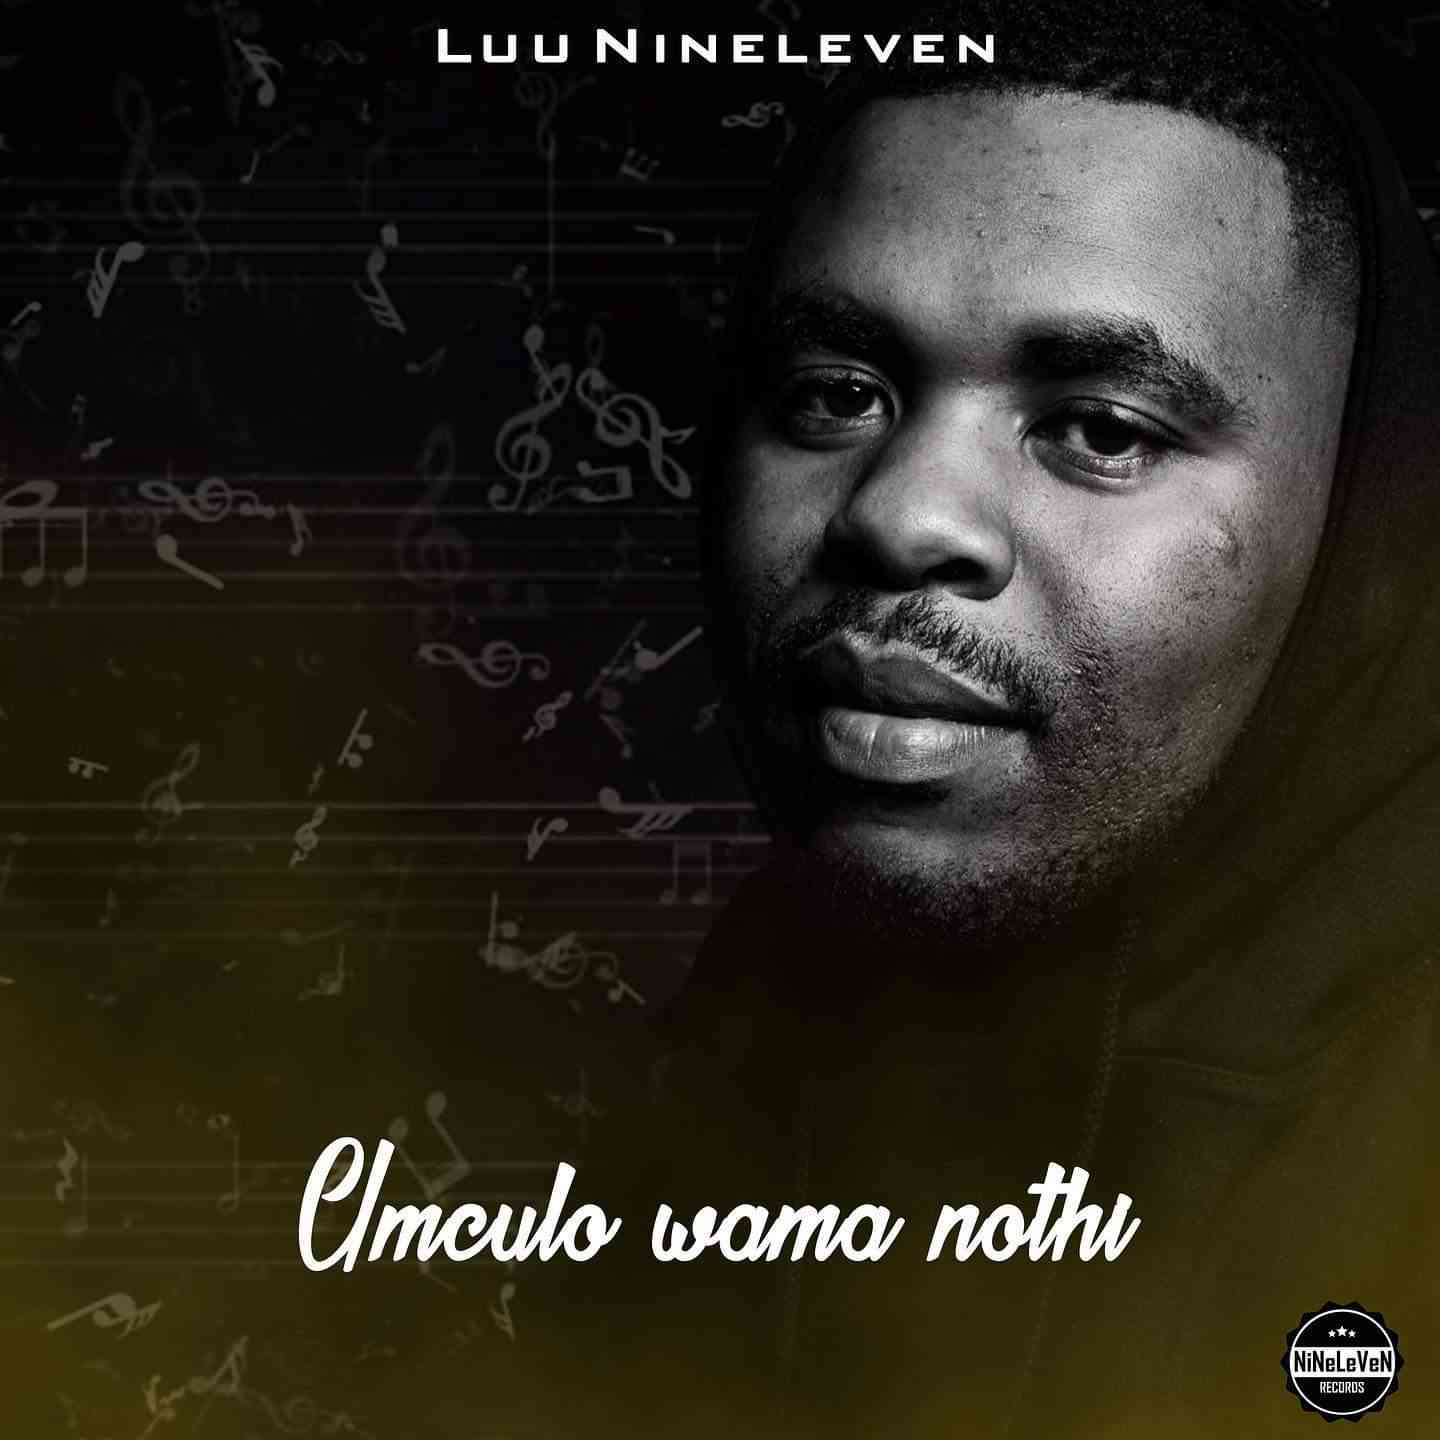 Luu Nineleven Reveals Umculo Wama Nothi